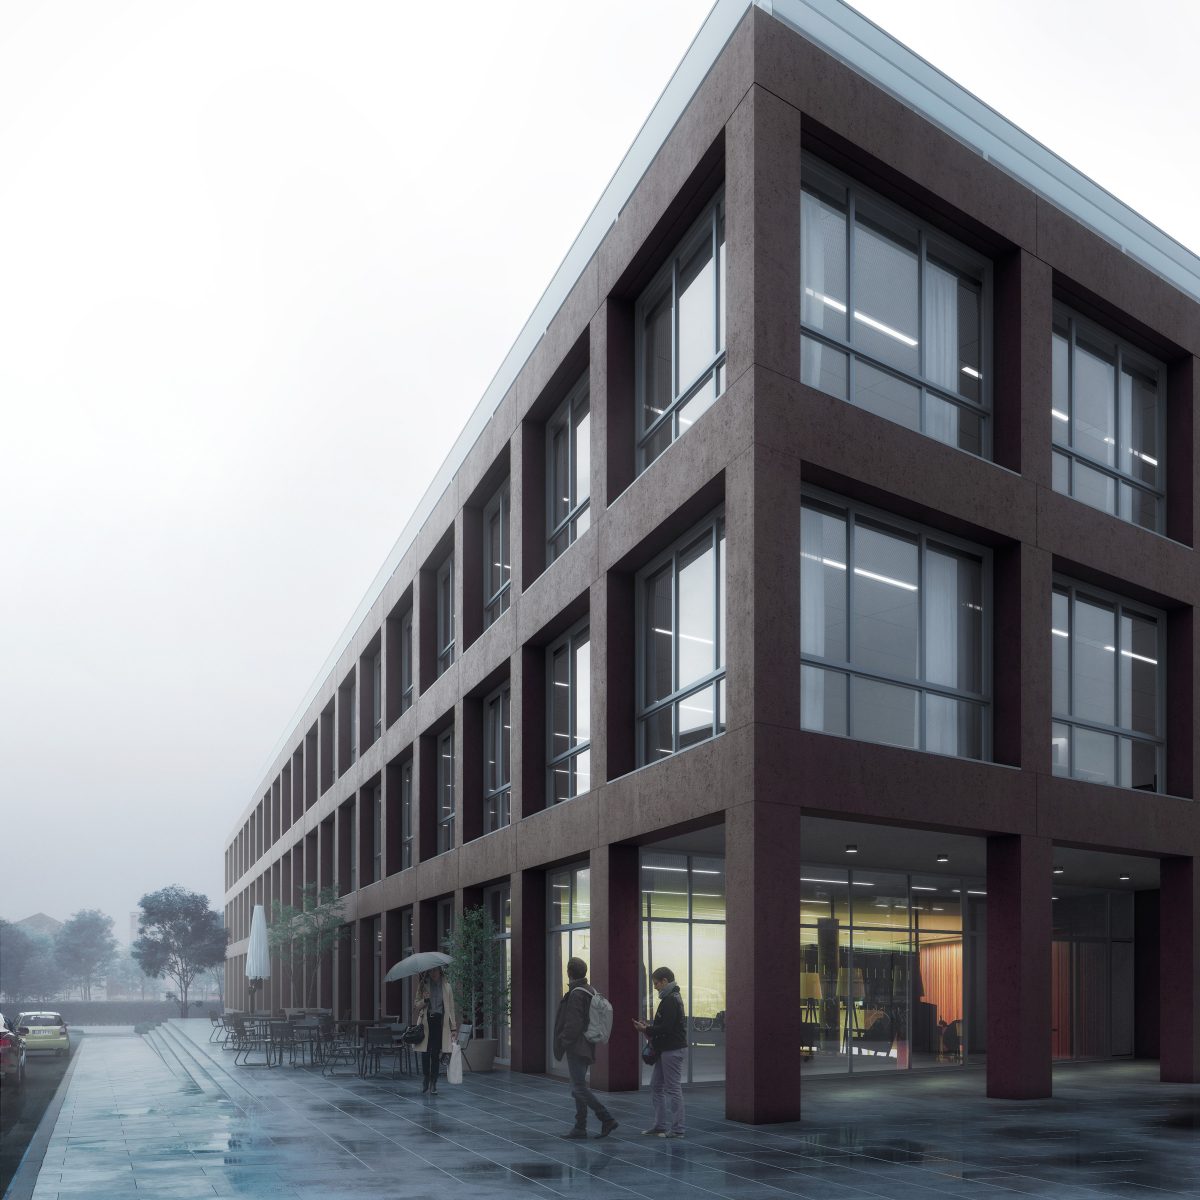 Neubau des Verwaltungsgebäudes für Mieter aus dem Wissenschafts- und Forschungsumfeld auf dem Campus der TH Wildau.